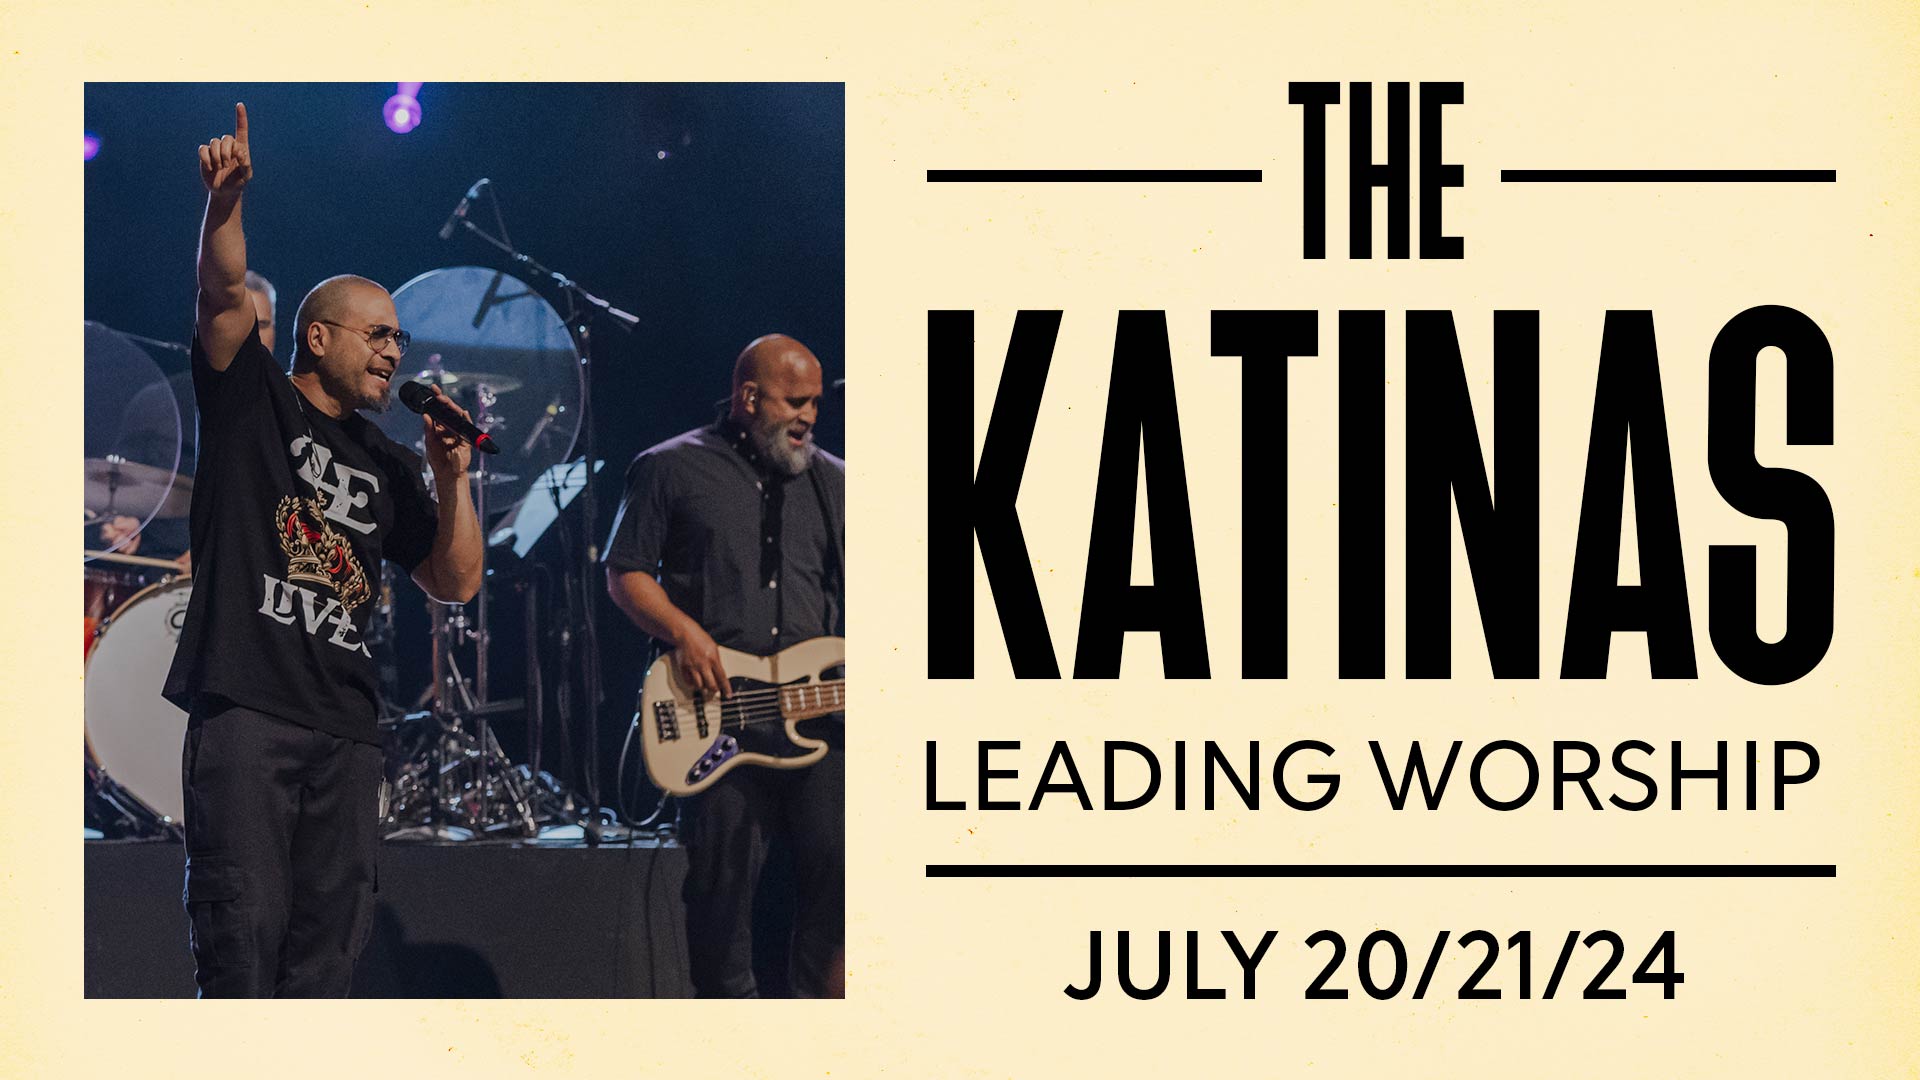 The Katinas – July 20/21/24